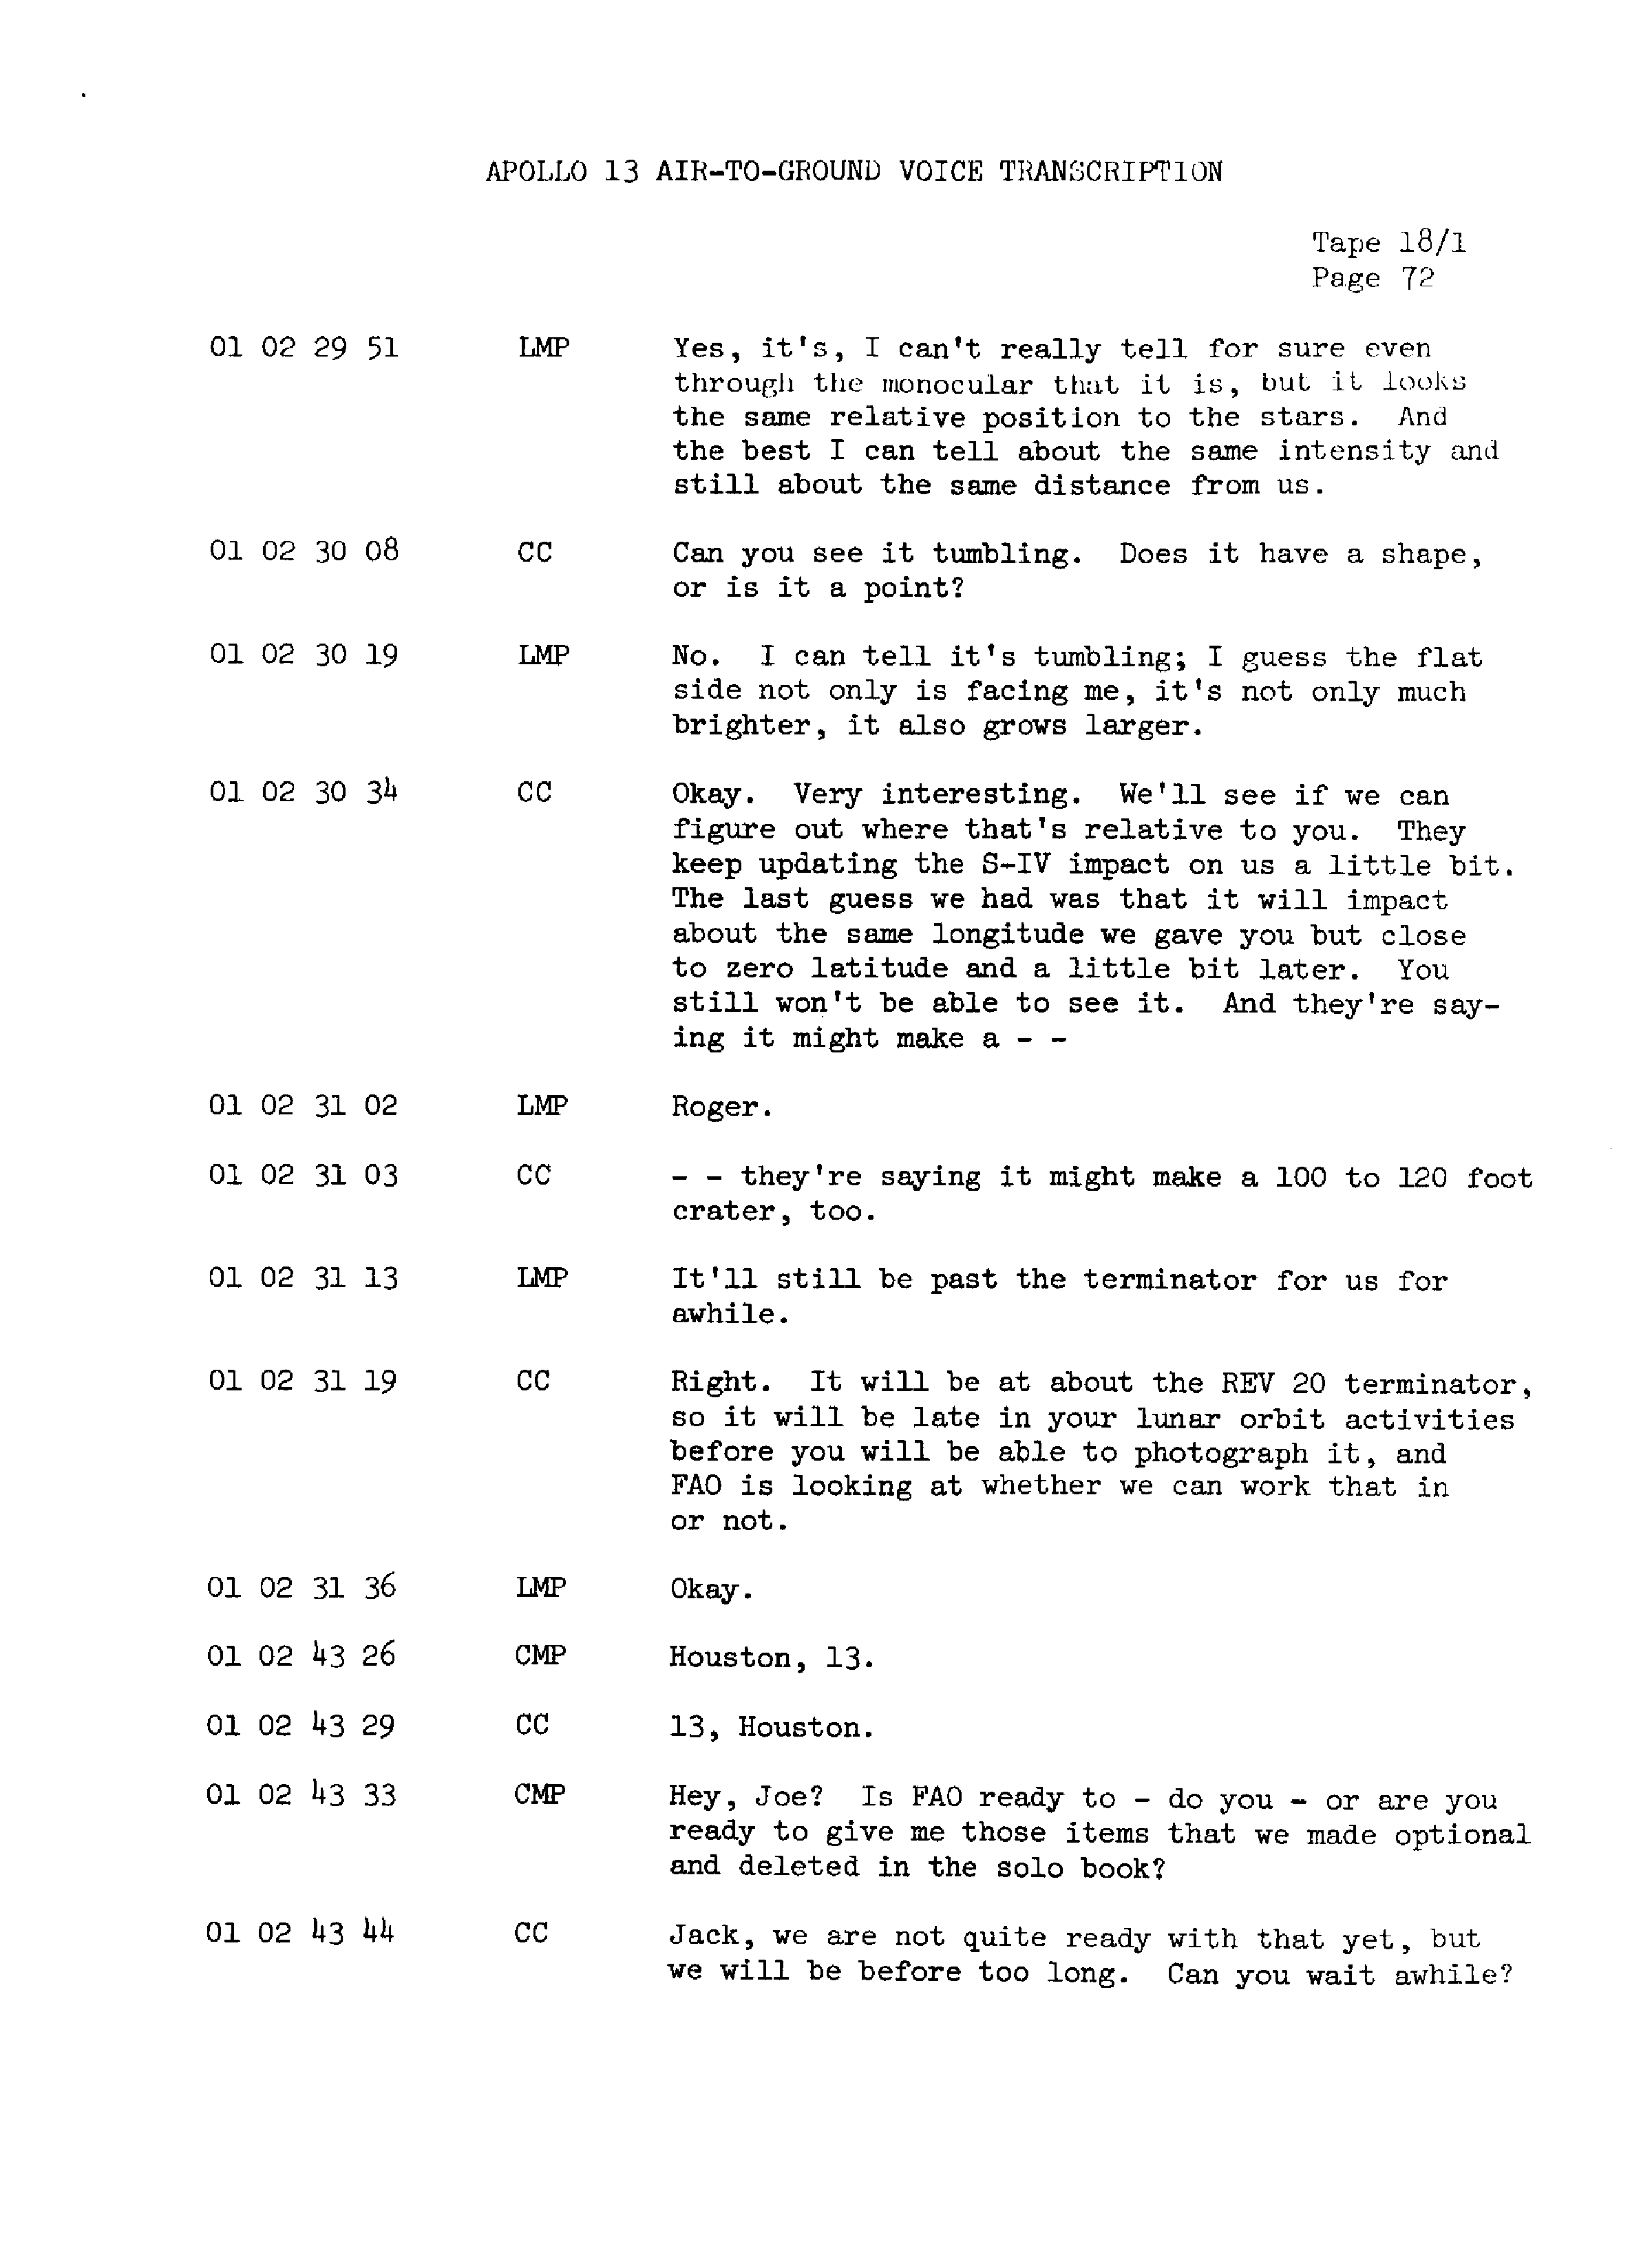 Page 79 of Apollo 13’s original transcript